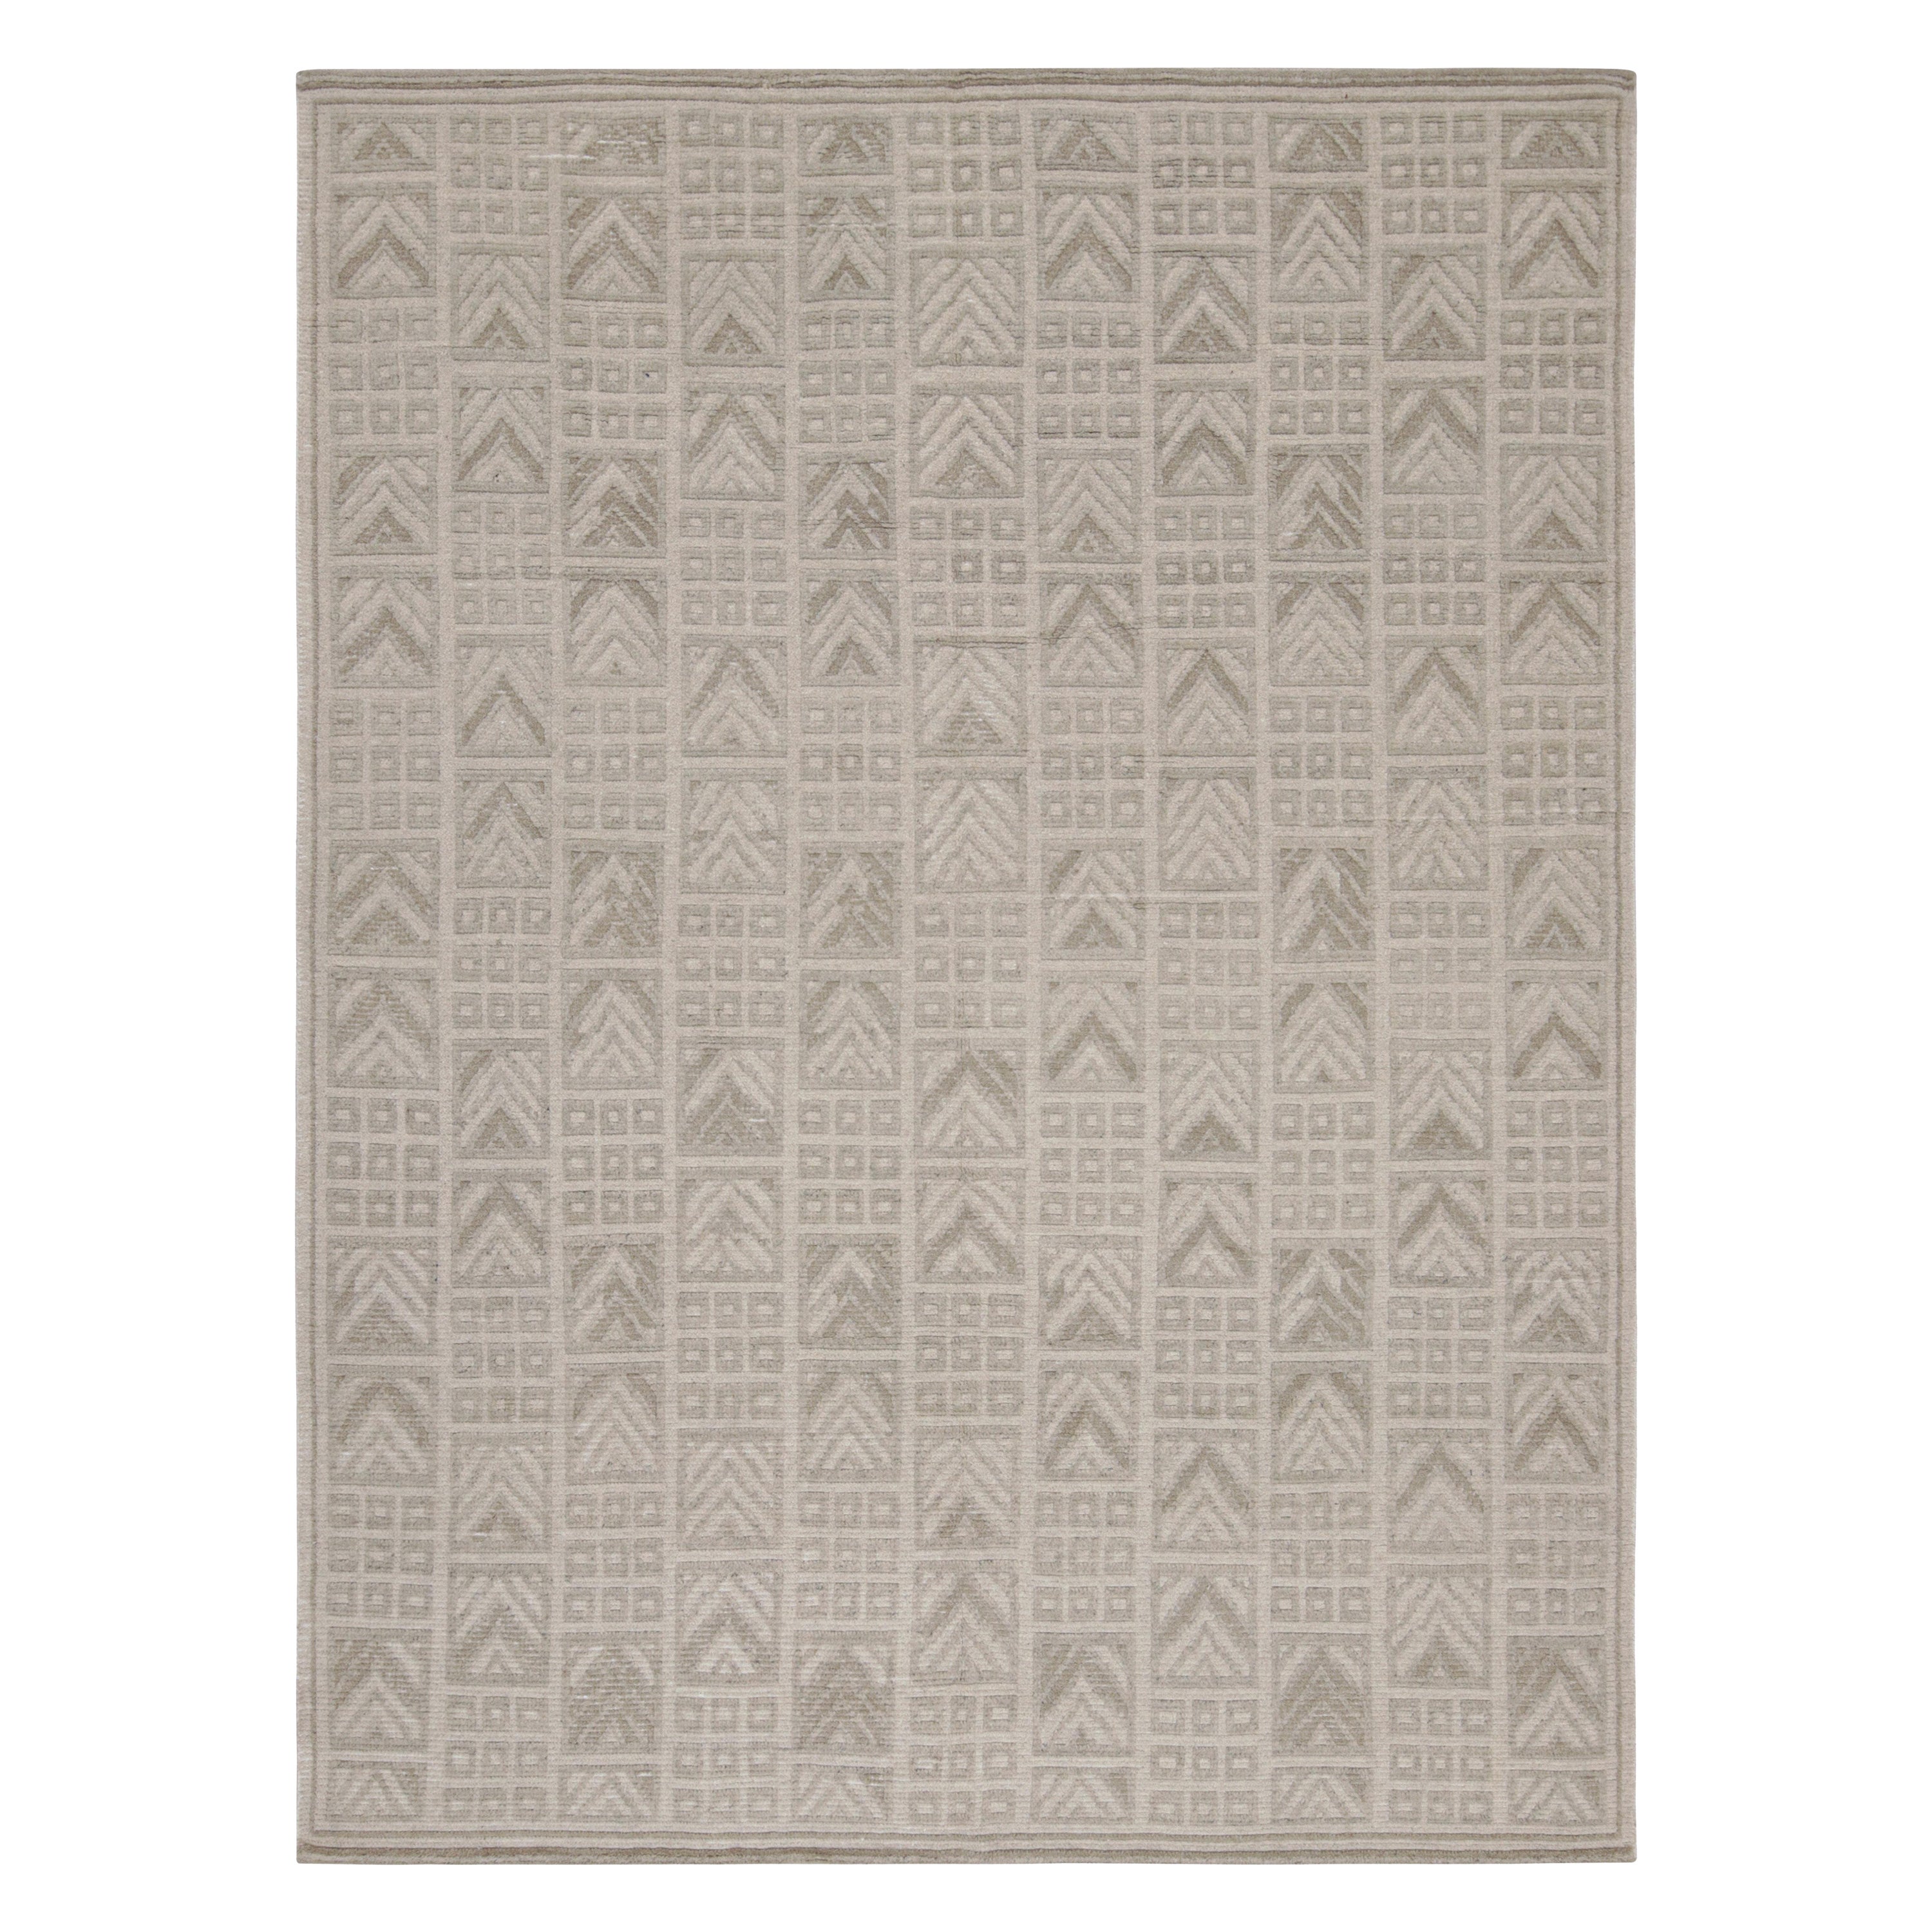 Rug & Kilim's Teppich im skandinavischen Stil mit beigefarbenen und grauen geometrischen Mustern